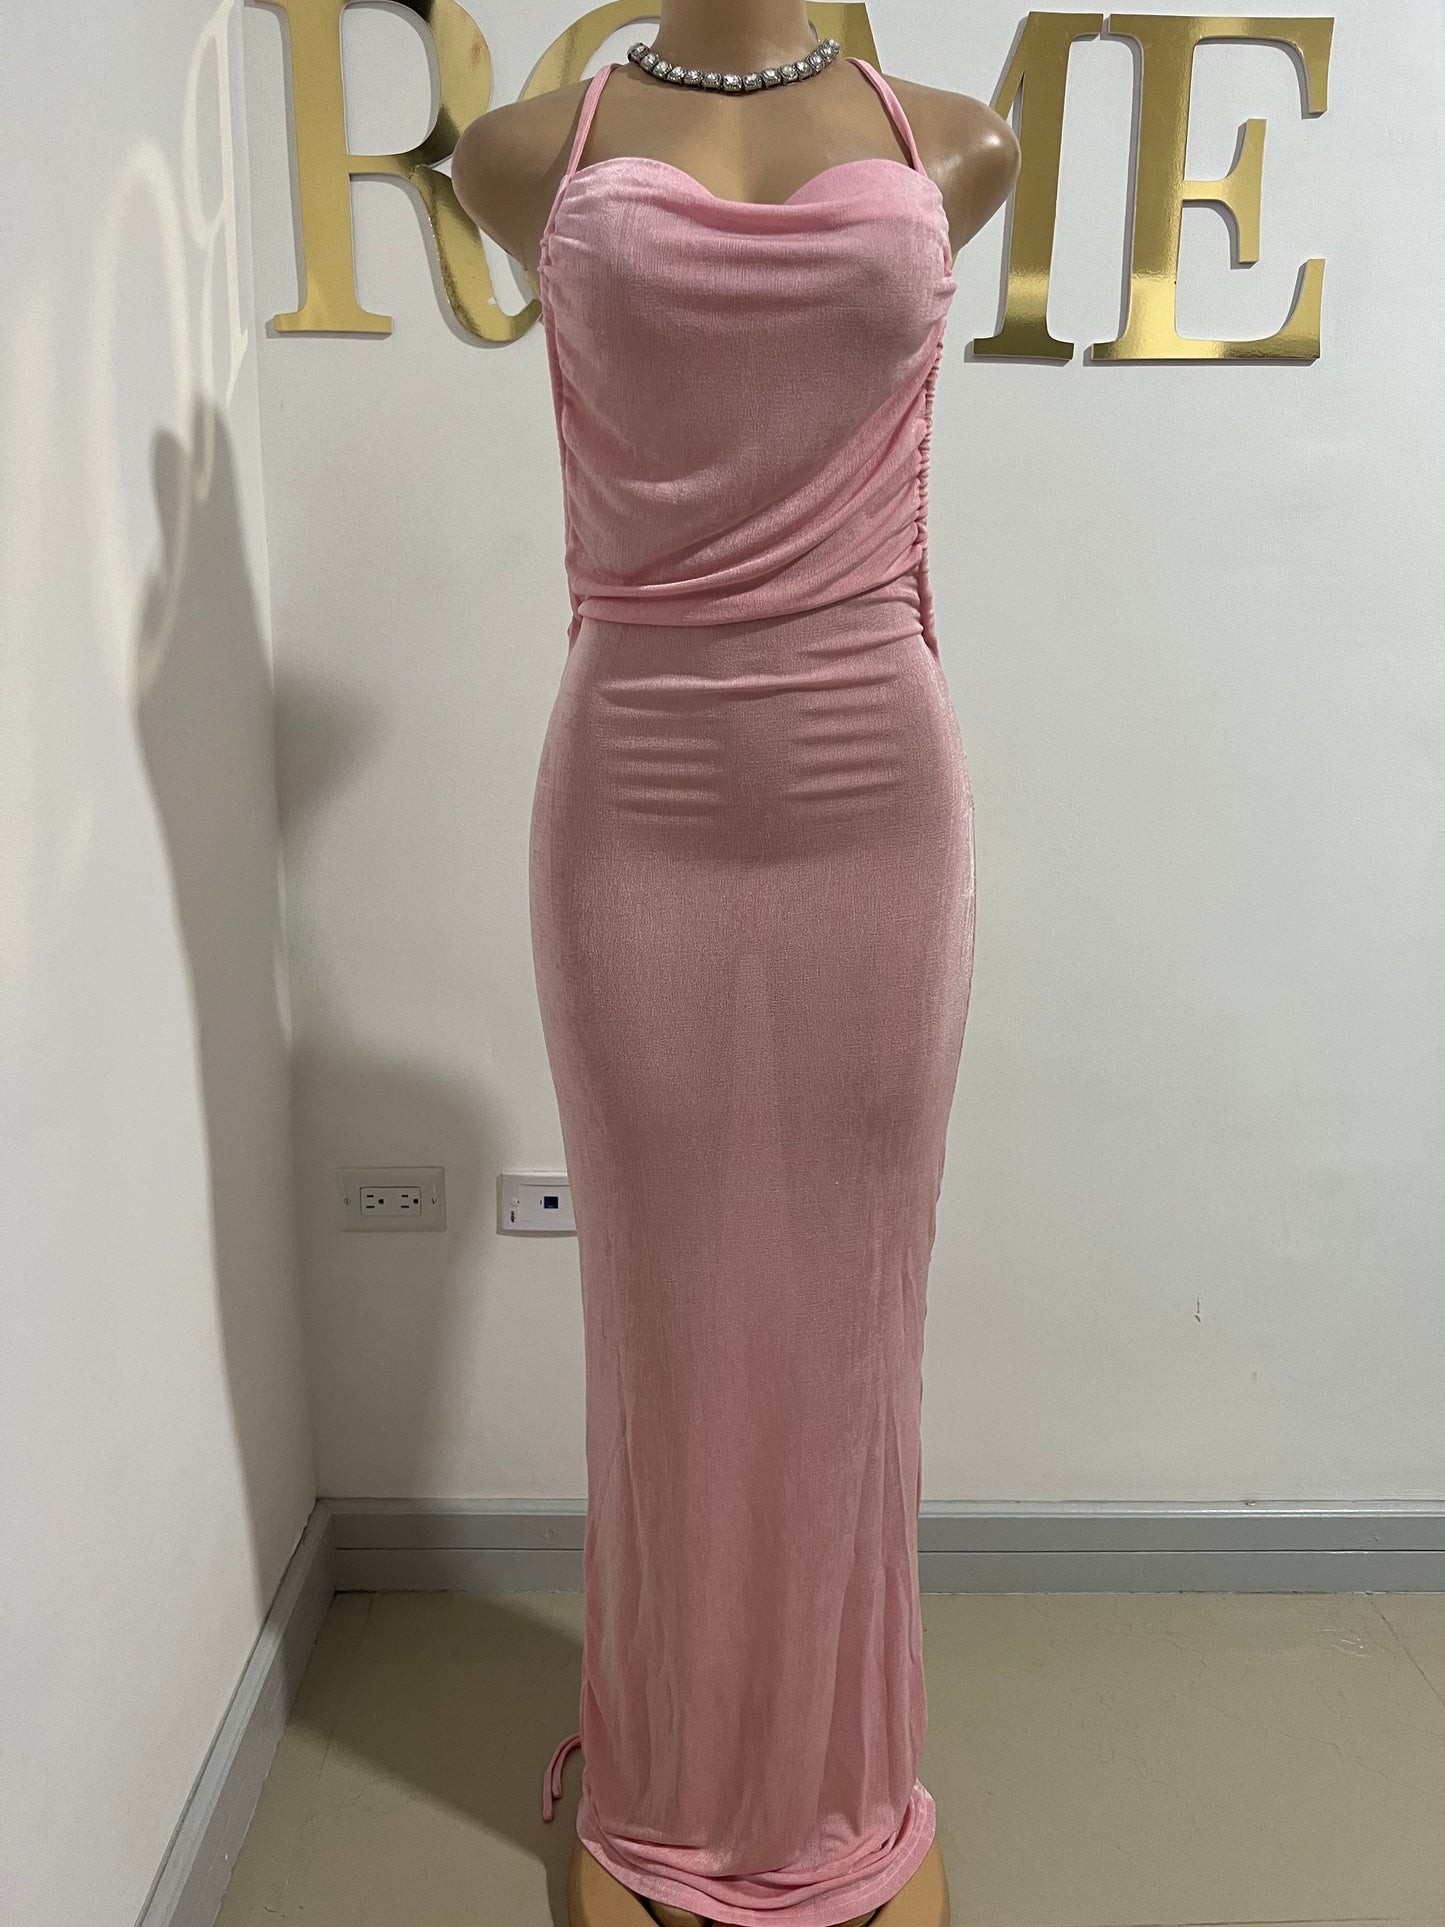 Carey Princess Dress (Light Pink)